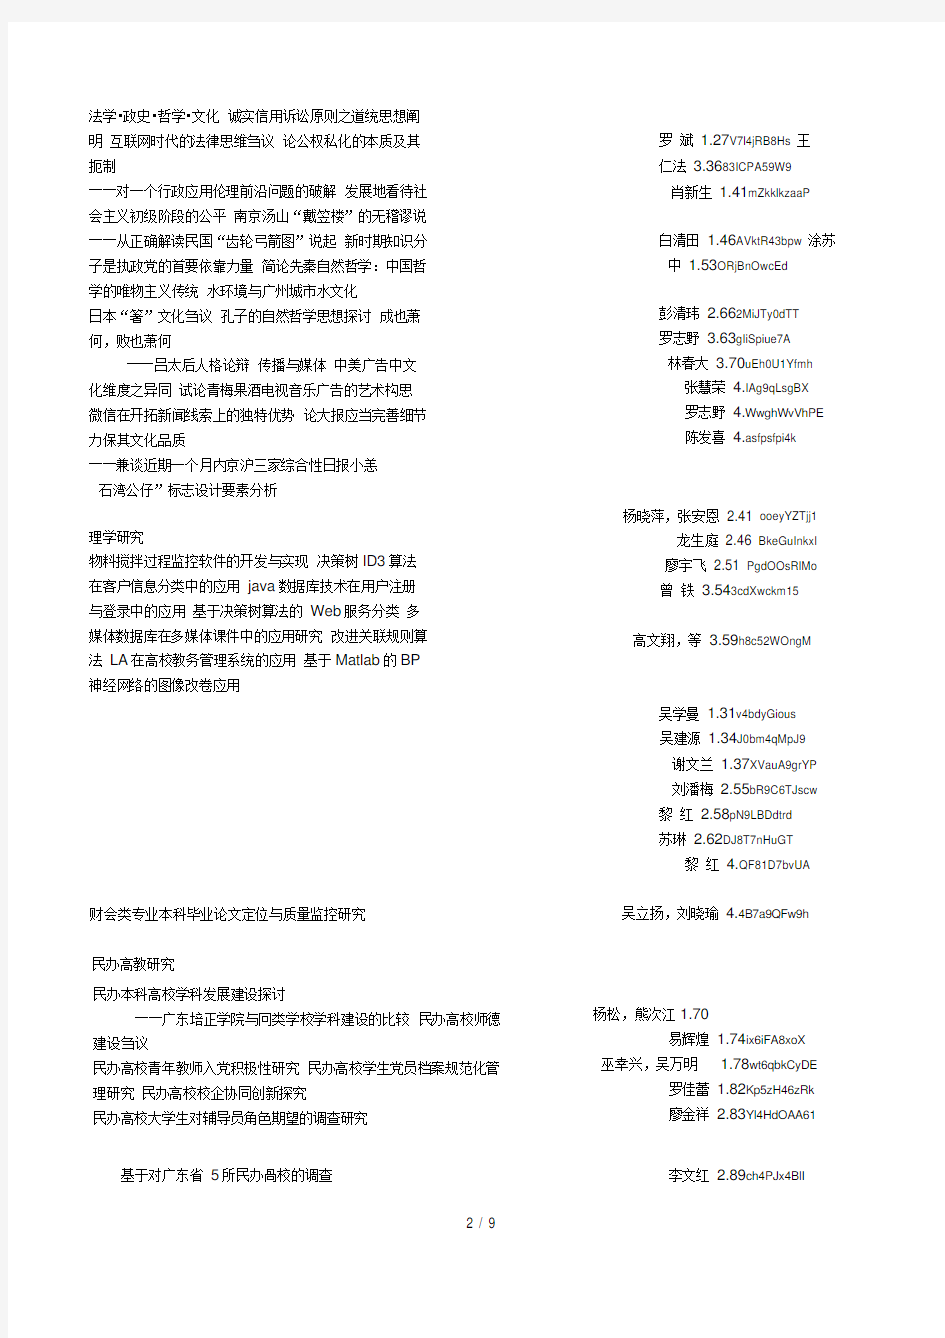 《广东培正学院学报》2014年1~4期(第十四卷)总目次